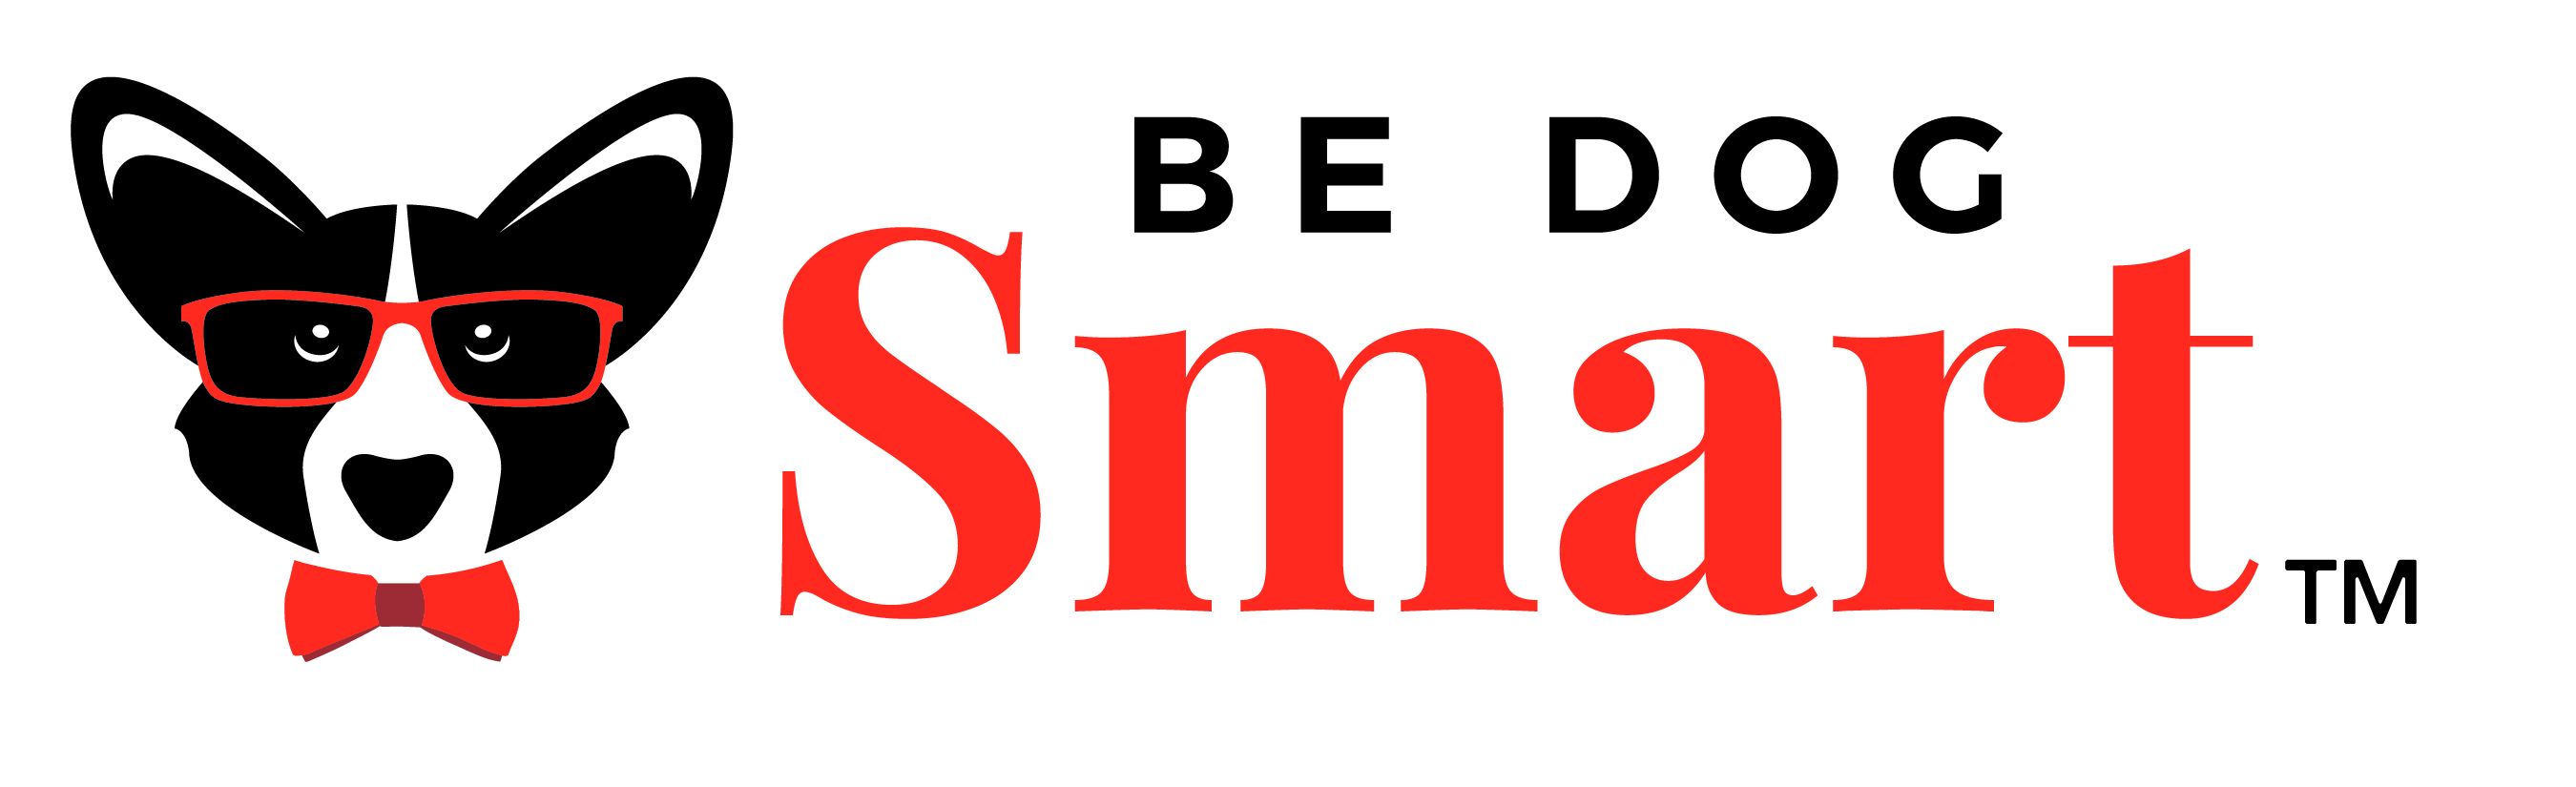 Be Dog Smart™ logo